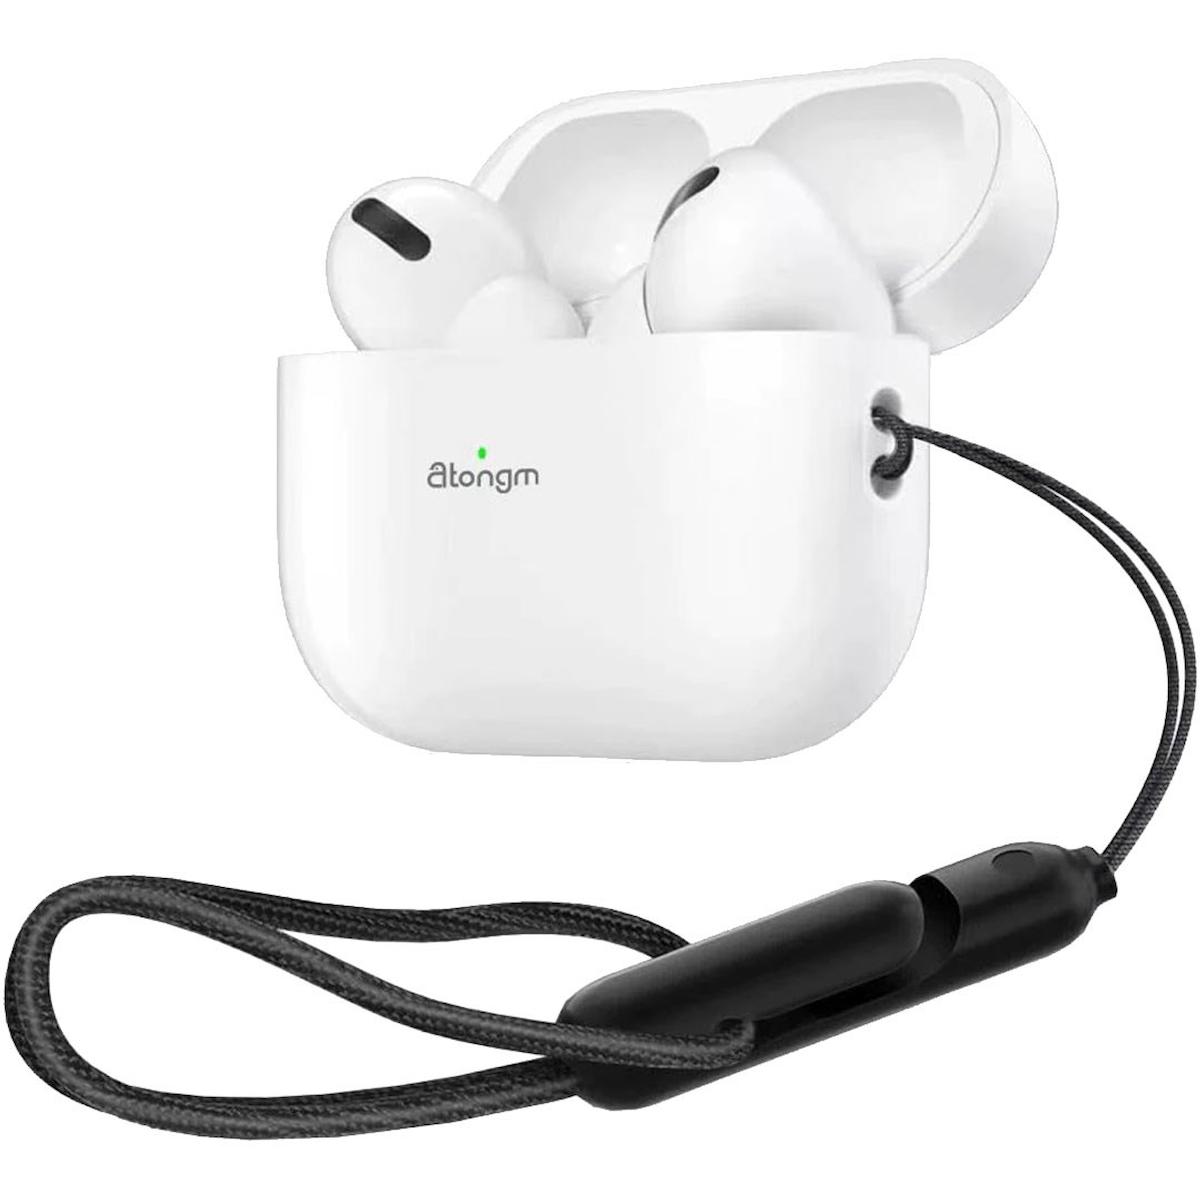 Atongm Air 10 Pro 5.2 Gürültü Önleyici Kablosuz Kulak İçi Bluetooth Kulaklık Beyaz